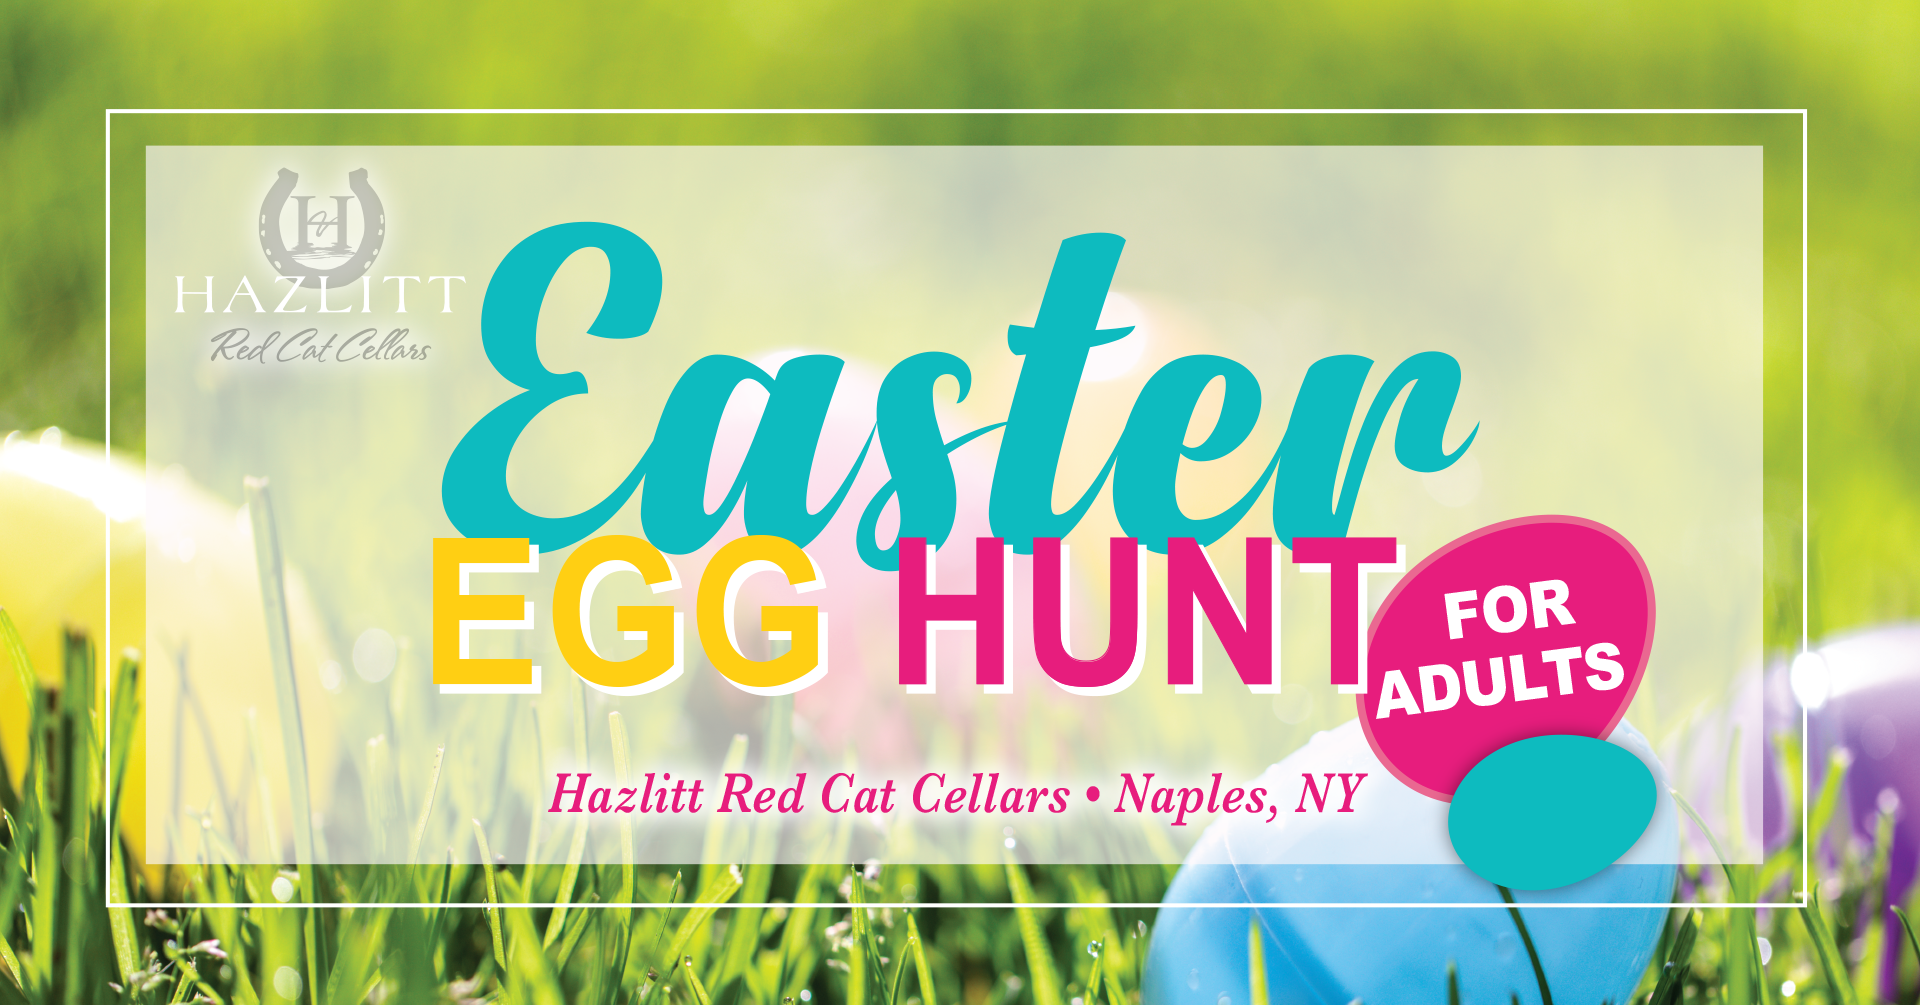 Easter Egg Hunt For Adults @ Hazlitt Red Cat Cellars, Naples, NY